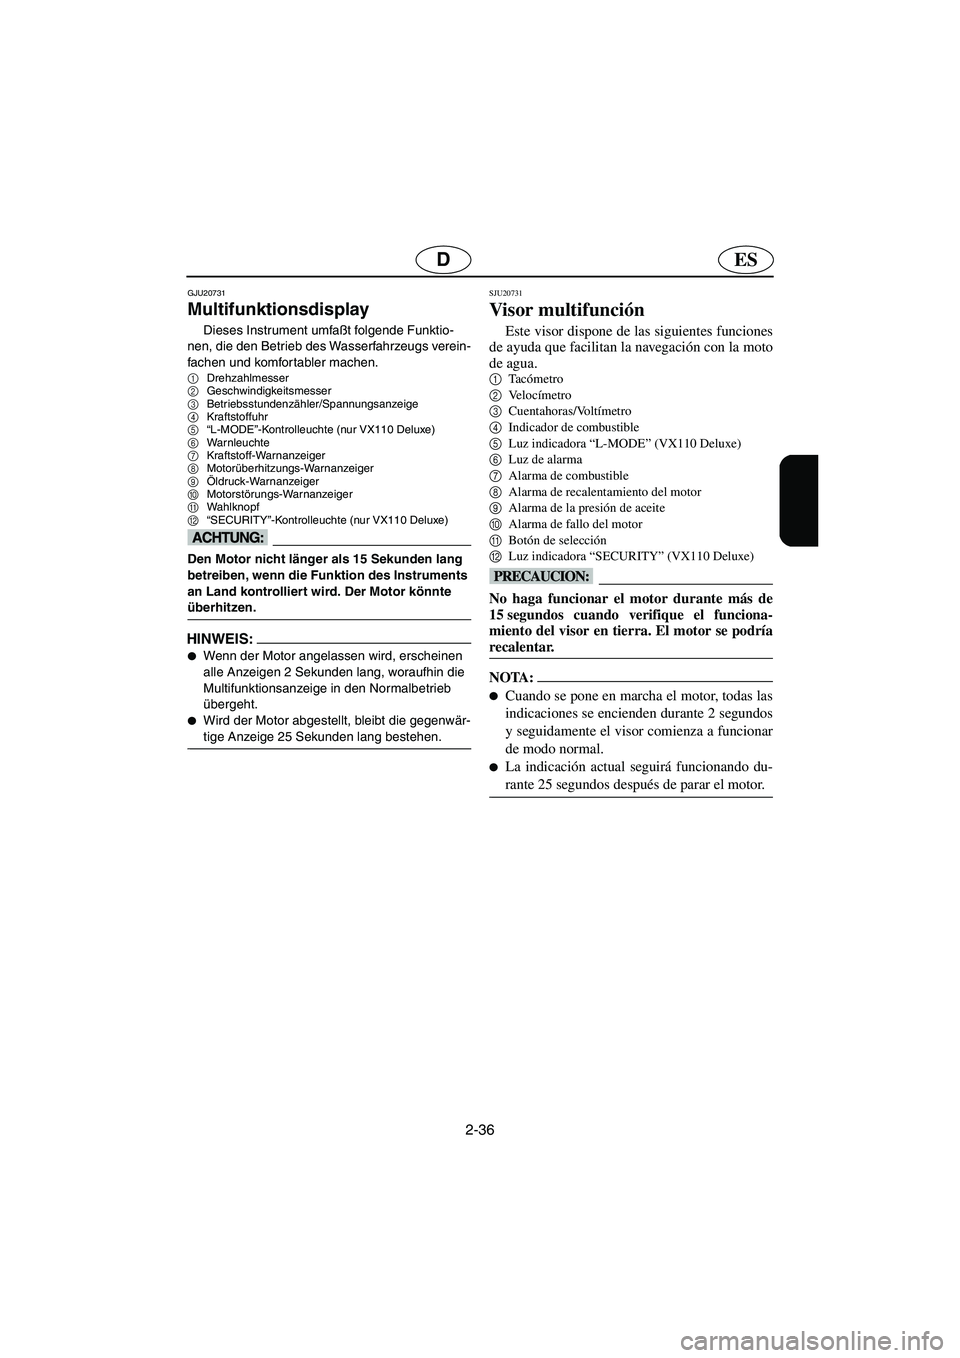 YAMAHA VX CRUISER 2005  Manual de utilização (in Portuguese) 2-36
ESD
GJU20731
Multifunktionsdisplay 
Dieses Instrument umfaßt folgende Funktio-
nen, die den Betrieb des Wasserfahrzeugs verein-
fachen und komfortabler machen.
1
Drehzahlmesser 
2
Geschwindigkei